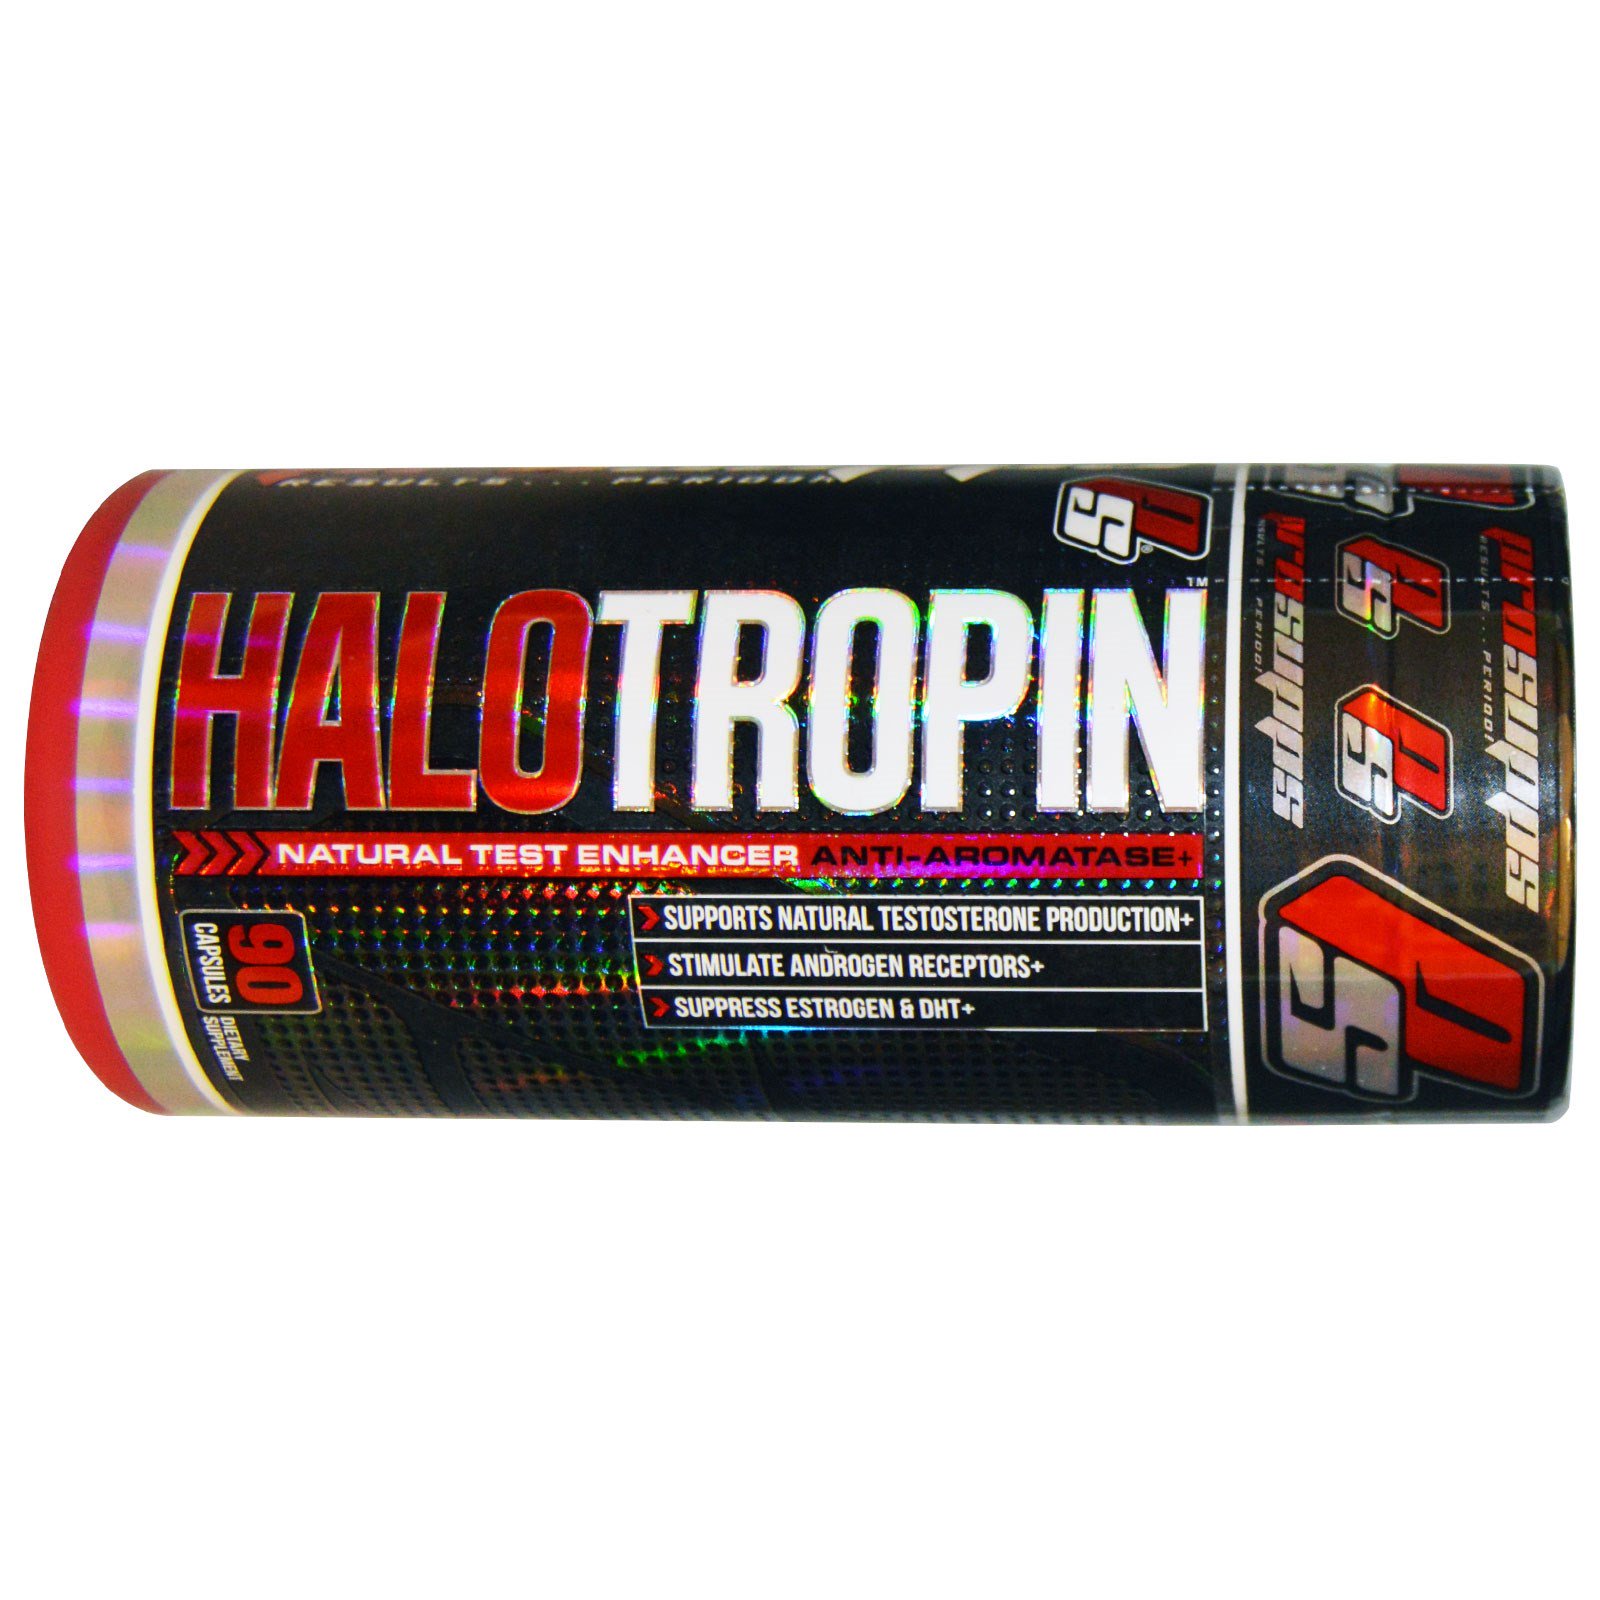 ProSupps, Halo Tropin, натуральный усилитель тестостерона, антиароматаза+, 90 капсул (Discontinued Item)